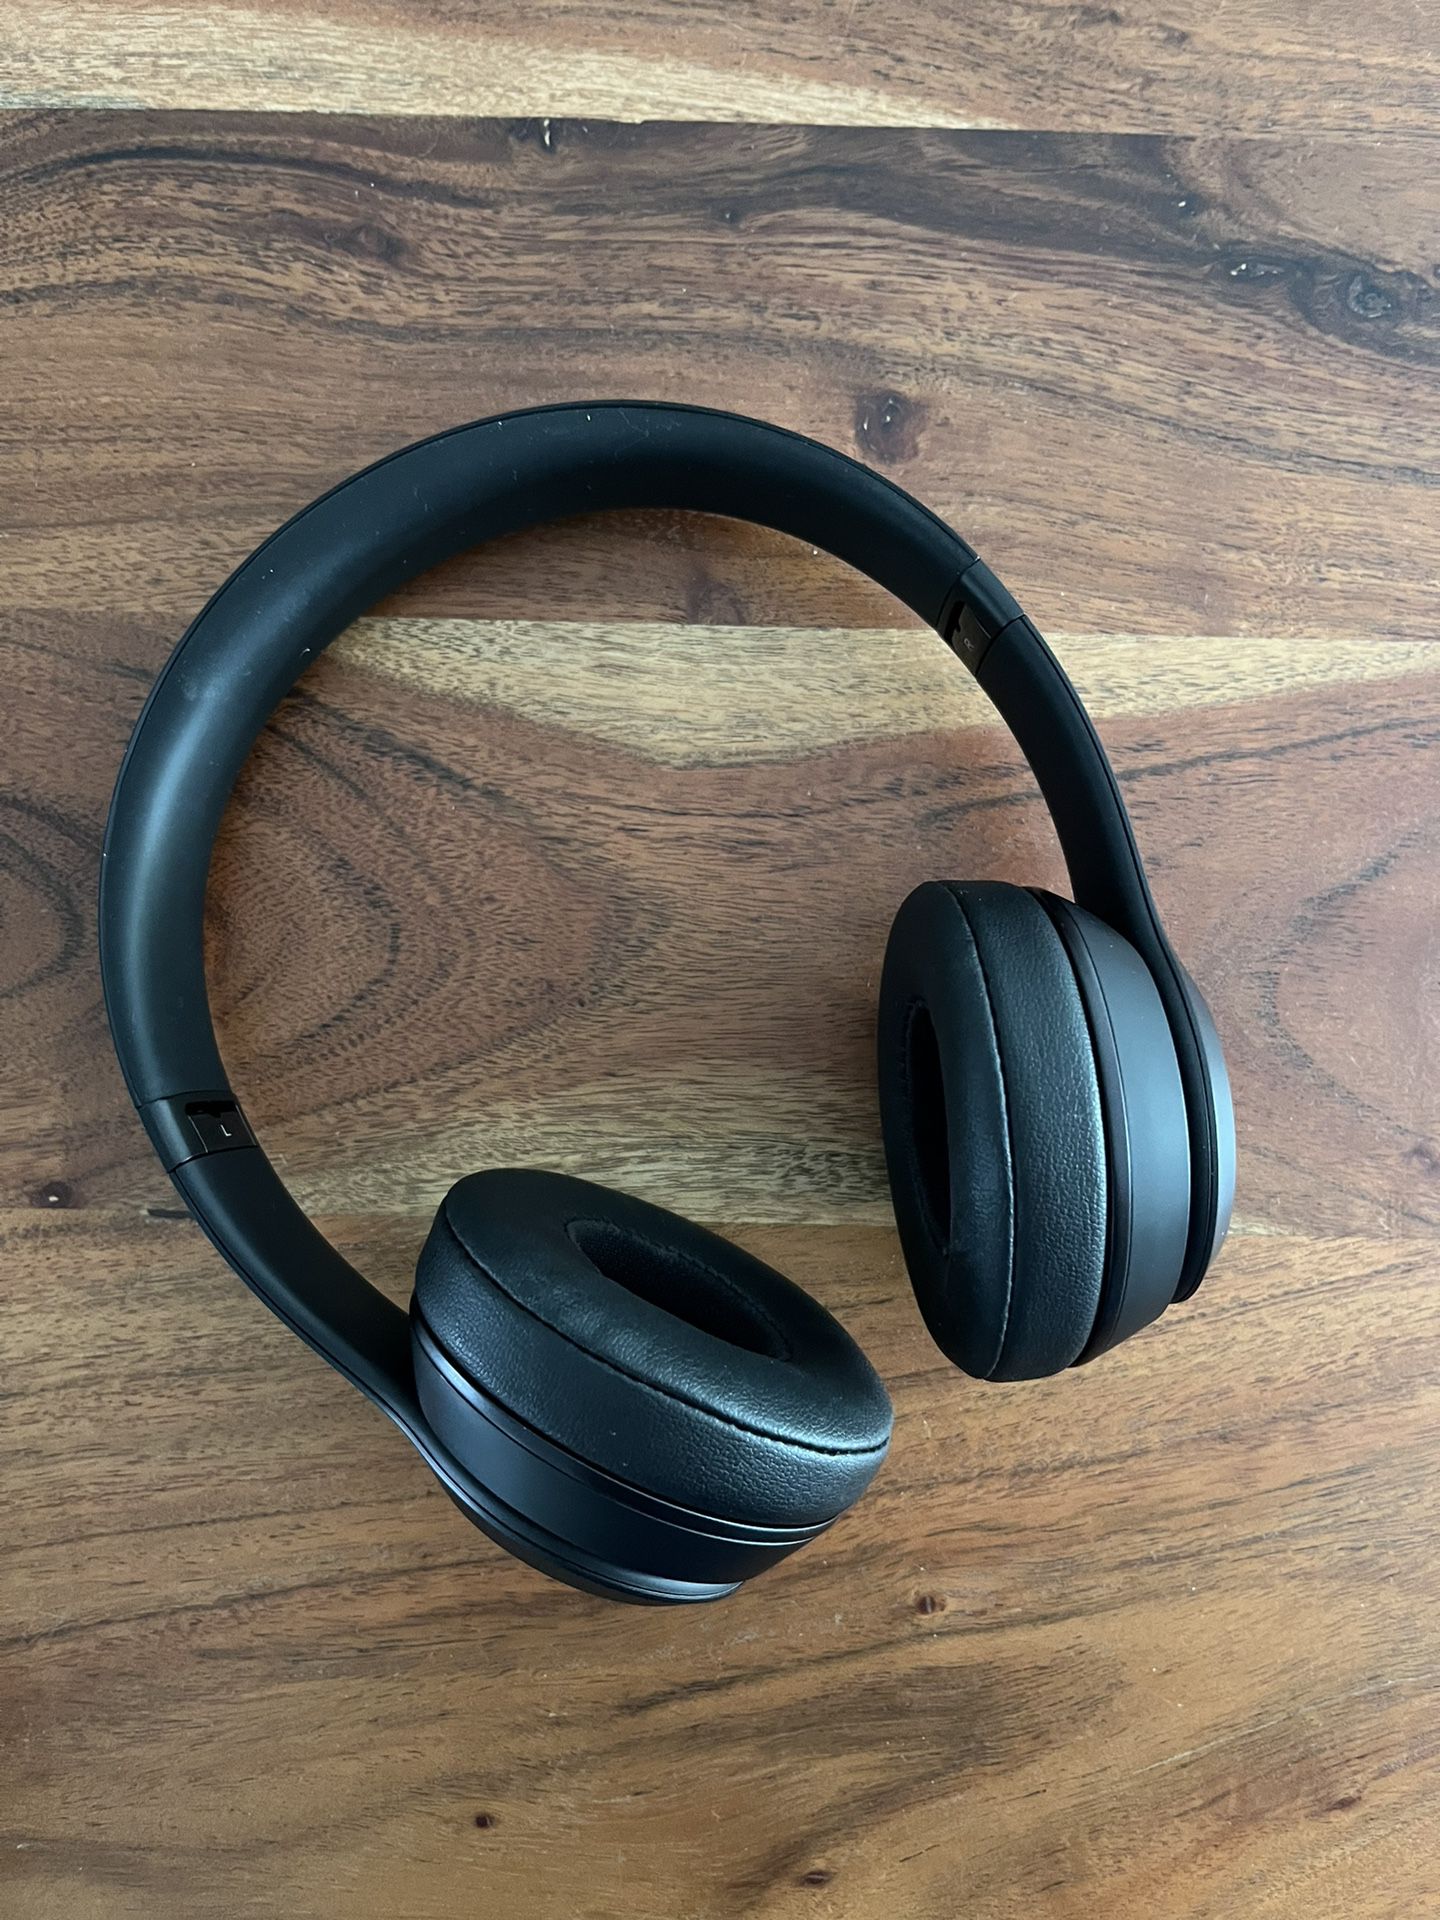 Beats by Dr. Dre Beats Solo3 Wireless On-Ear Headphones - Matte Black